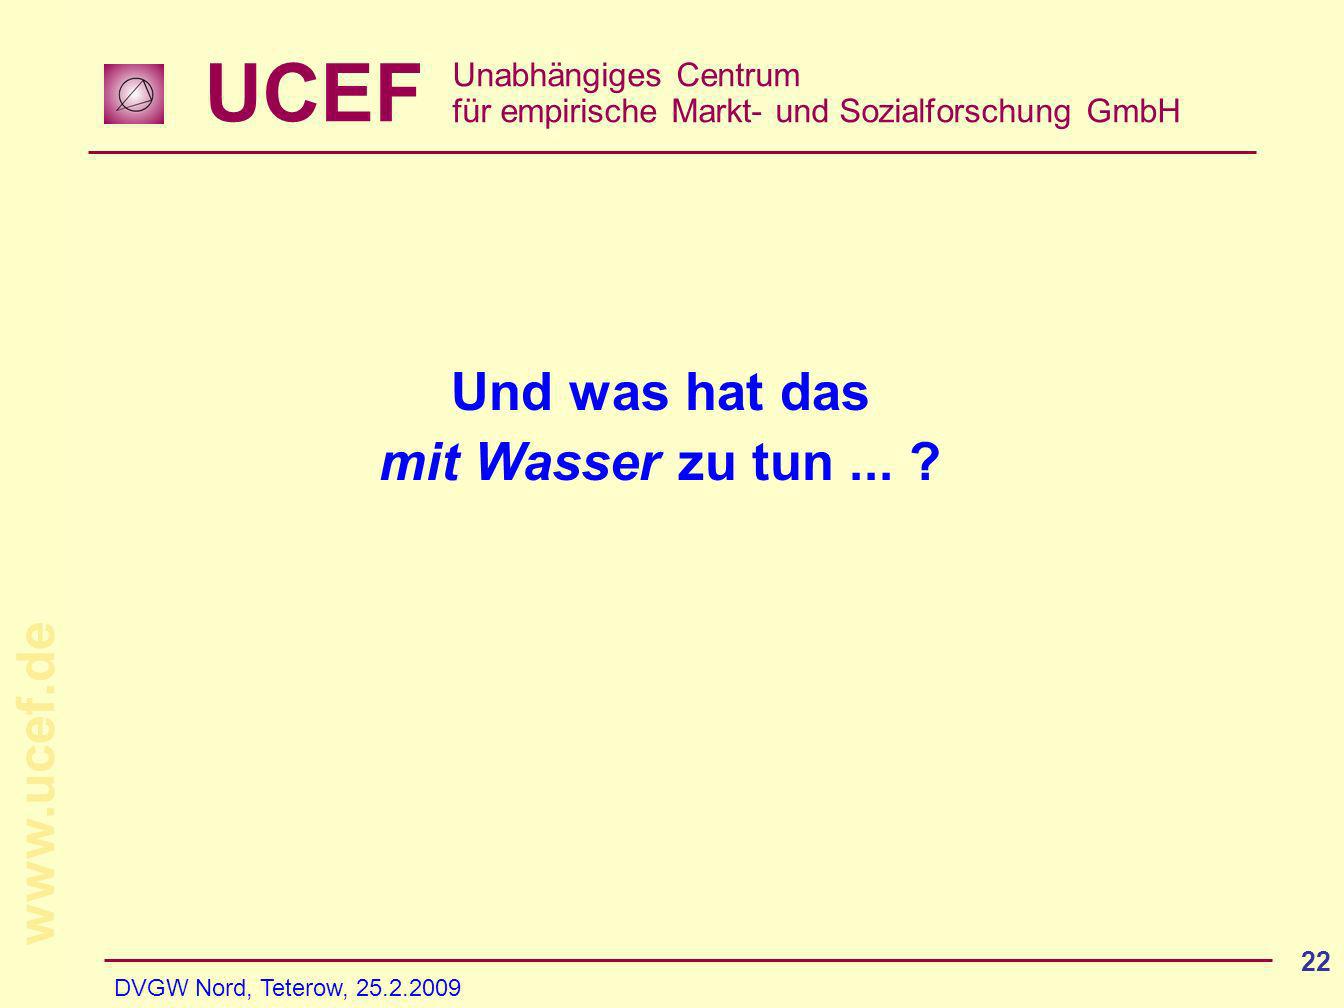 UCEF Unabhängiges Centrum für empirische Markt- und Sozialforschung GmbH   DVGW Nord, Teterow, Und was hat das mit Wasser zu tun...